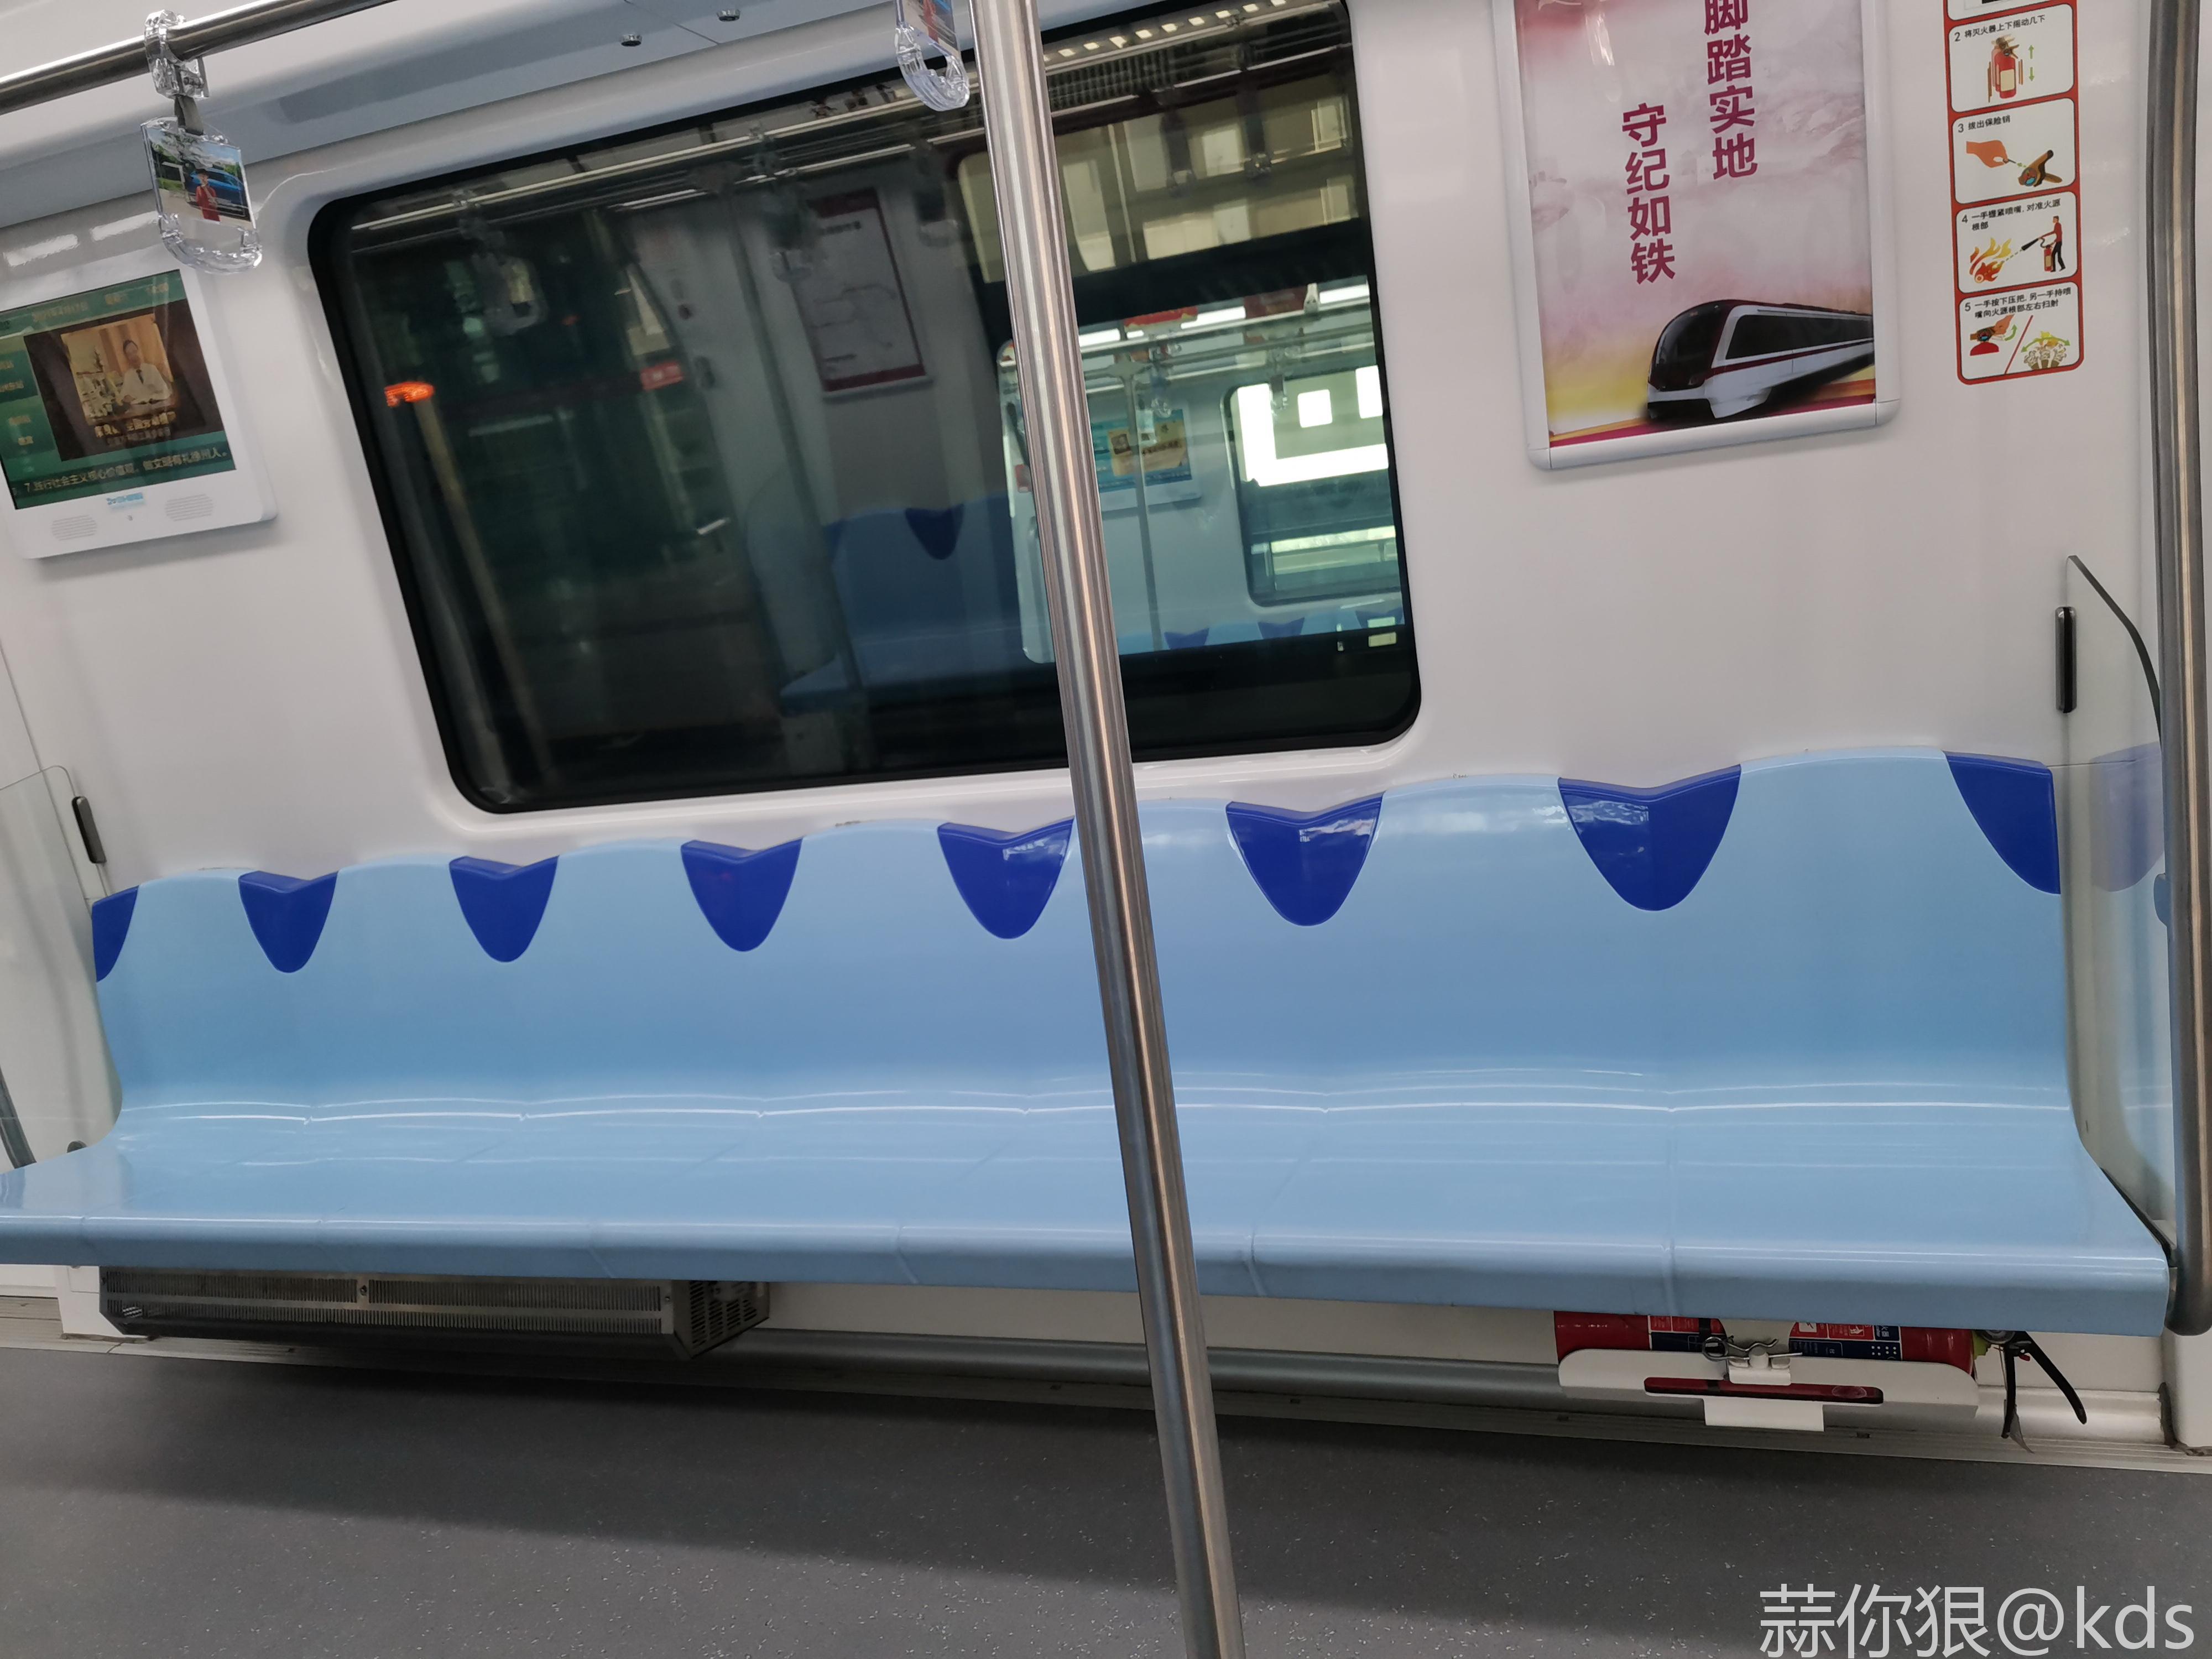 看看徐州地铁,座位标的很好,避免上海这种每次为争坐5个人还是6个人